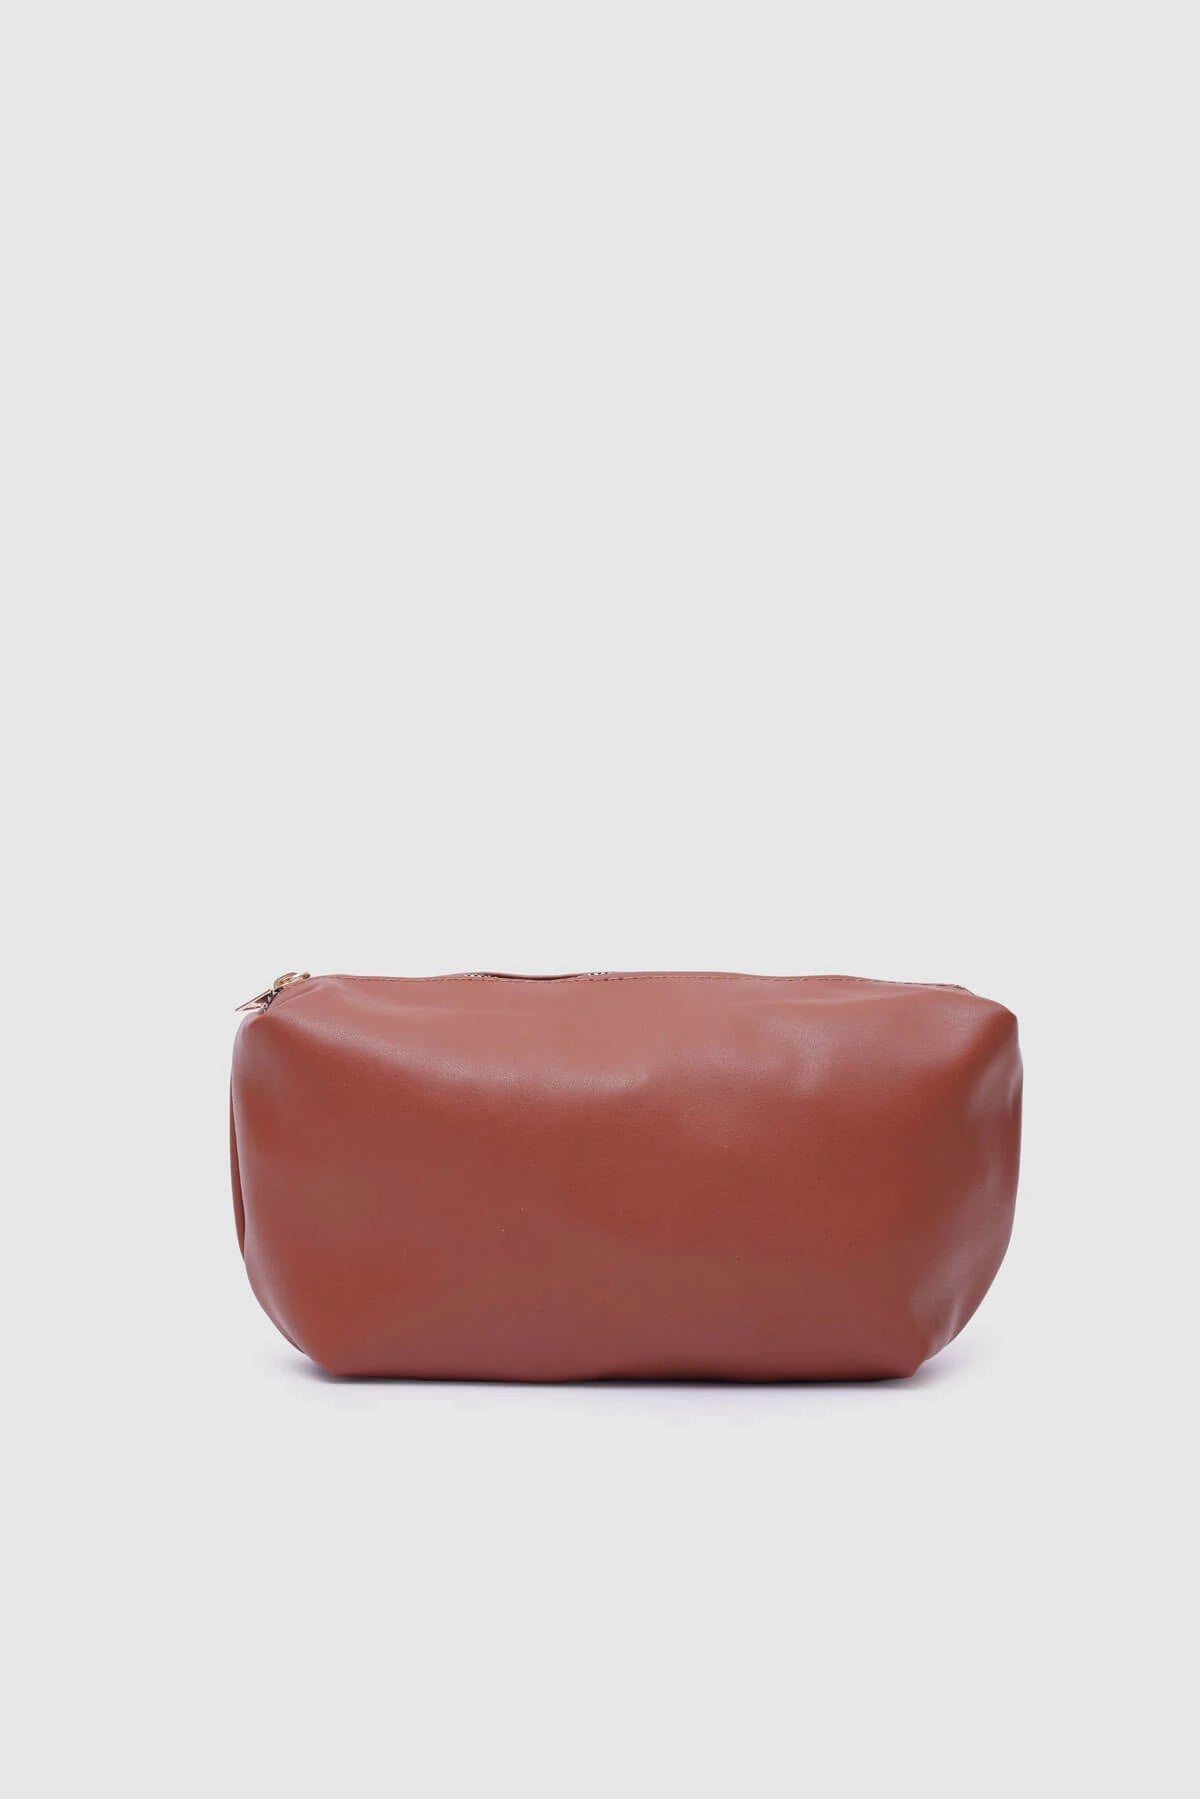 Fred Tan Leather Loose Oversize Shoulder Bag shoulder bag LUNARITY GARAGE   